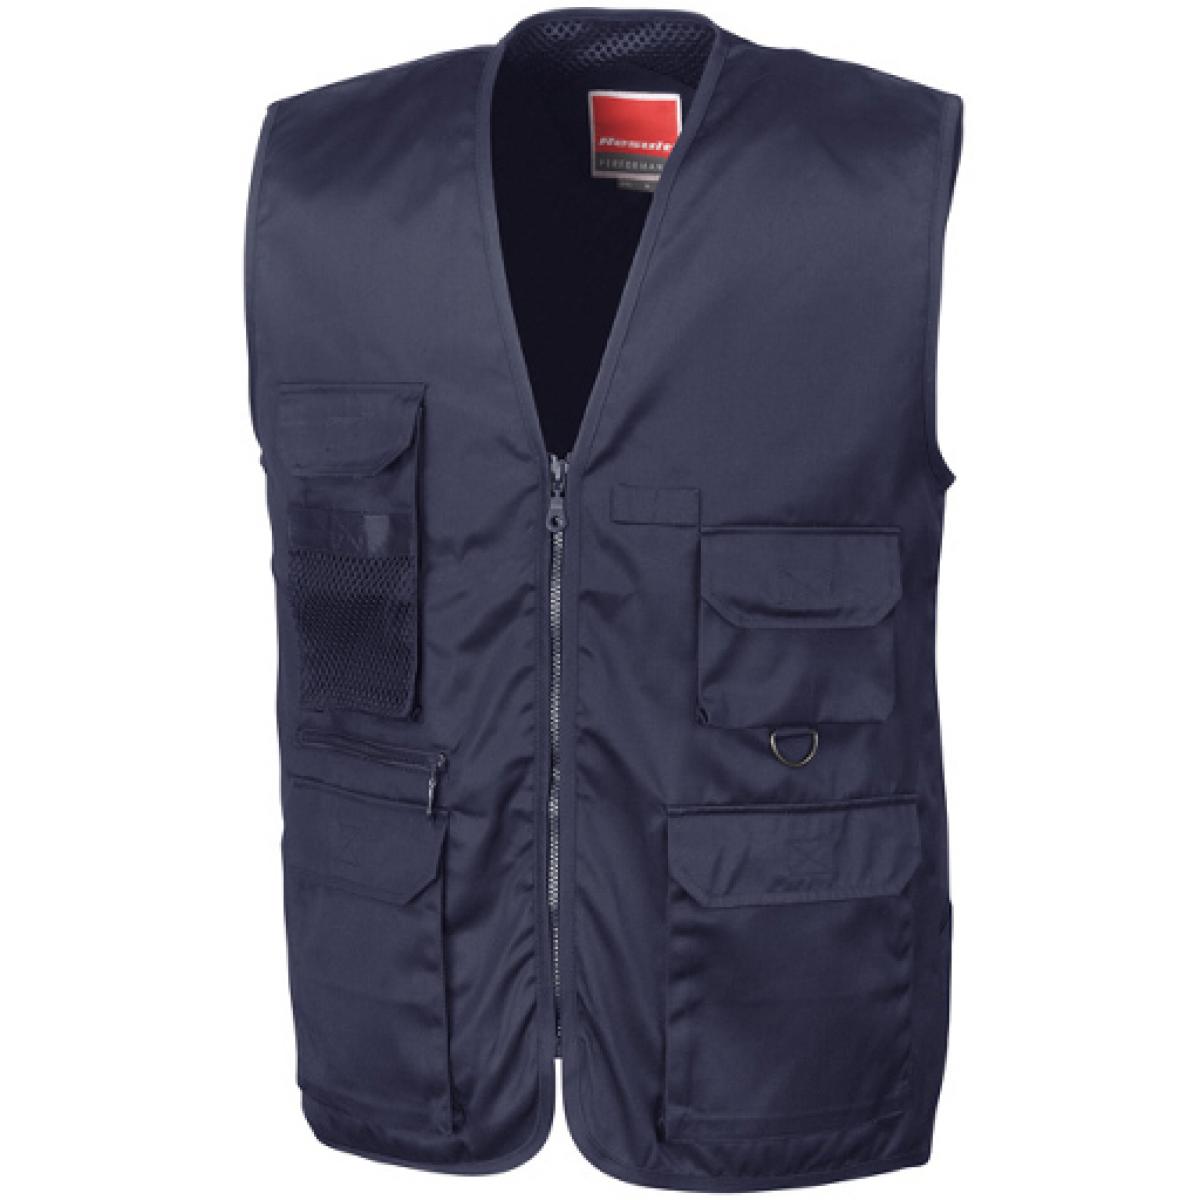 Hersteller: Result WORK-GUARD Herstellernummer: R45X Artikelbezeichnung: Herren Arbeitsweste Safari Vest Farbe: Midnight Navy